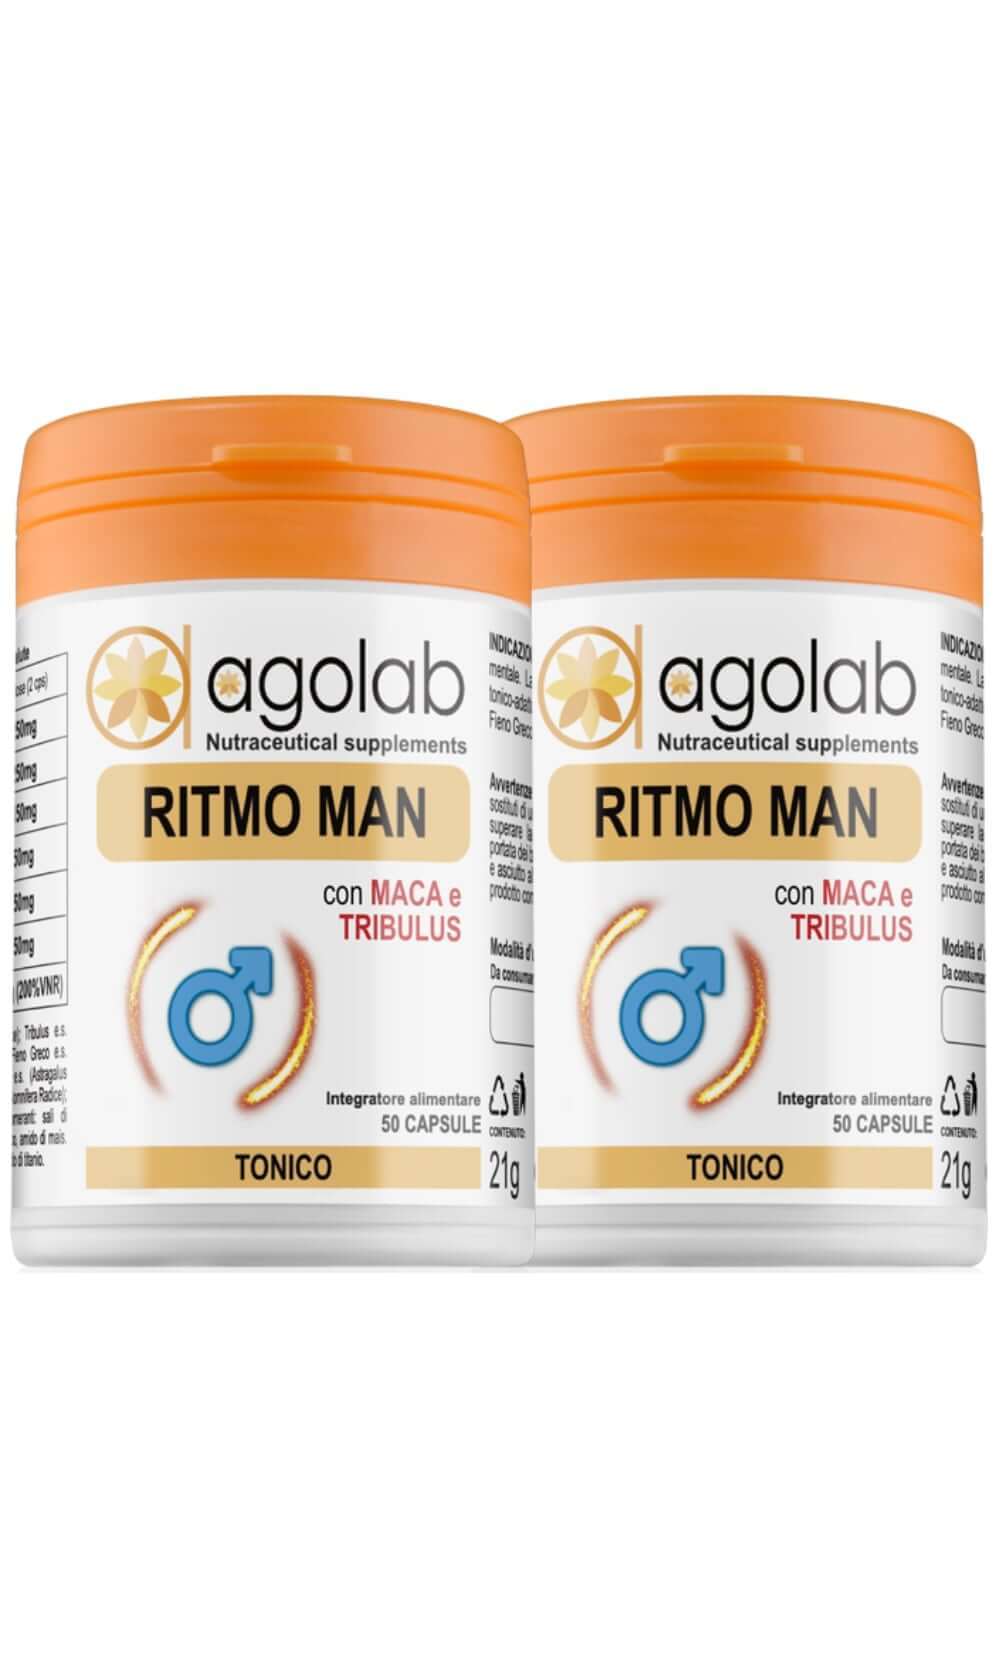 RitmoMan Testobooster Naturale Tonico Adattogeno maschile uomo integratore alimentare over 40 agolab nutraceutica per uomini maschile